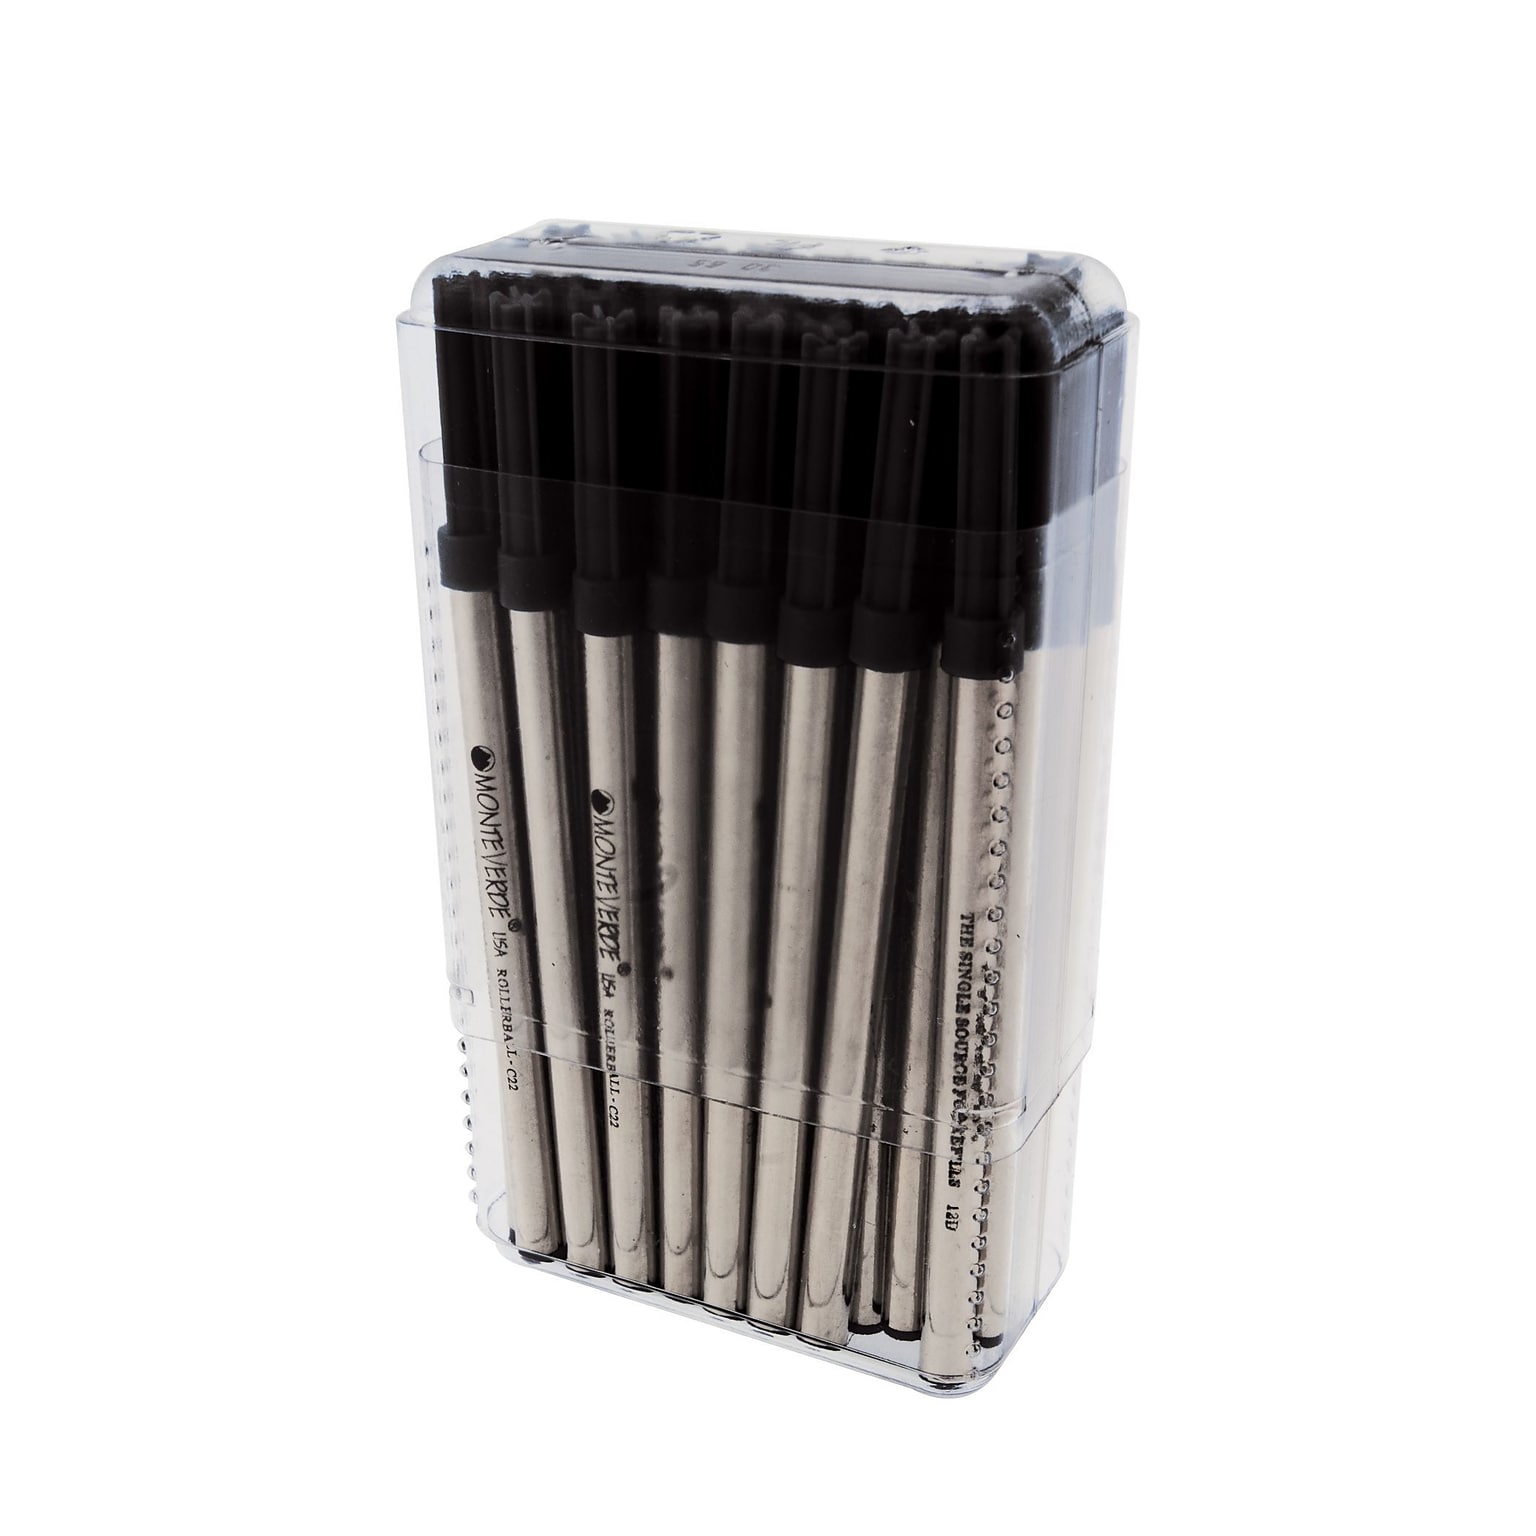 Monteverde® Fine Rollerball Refill For Cross Rollerball Pens, Black, 35/Pack